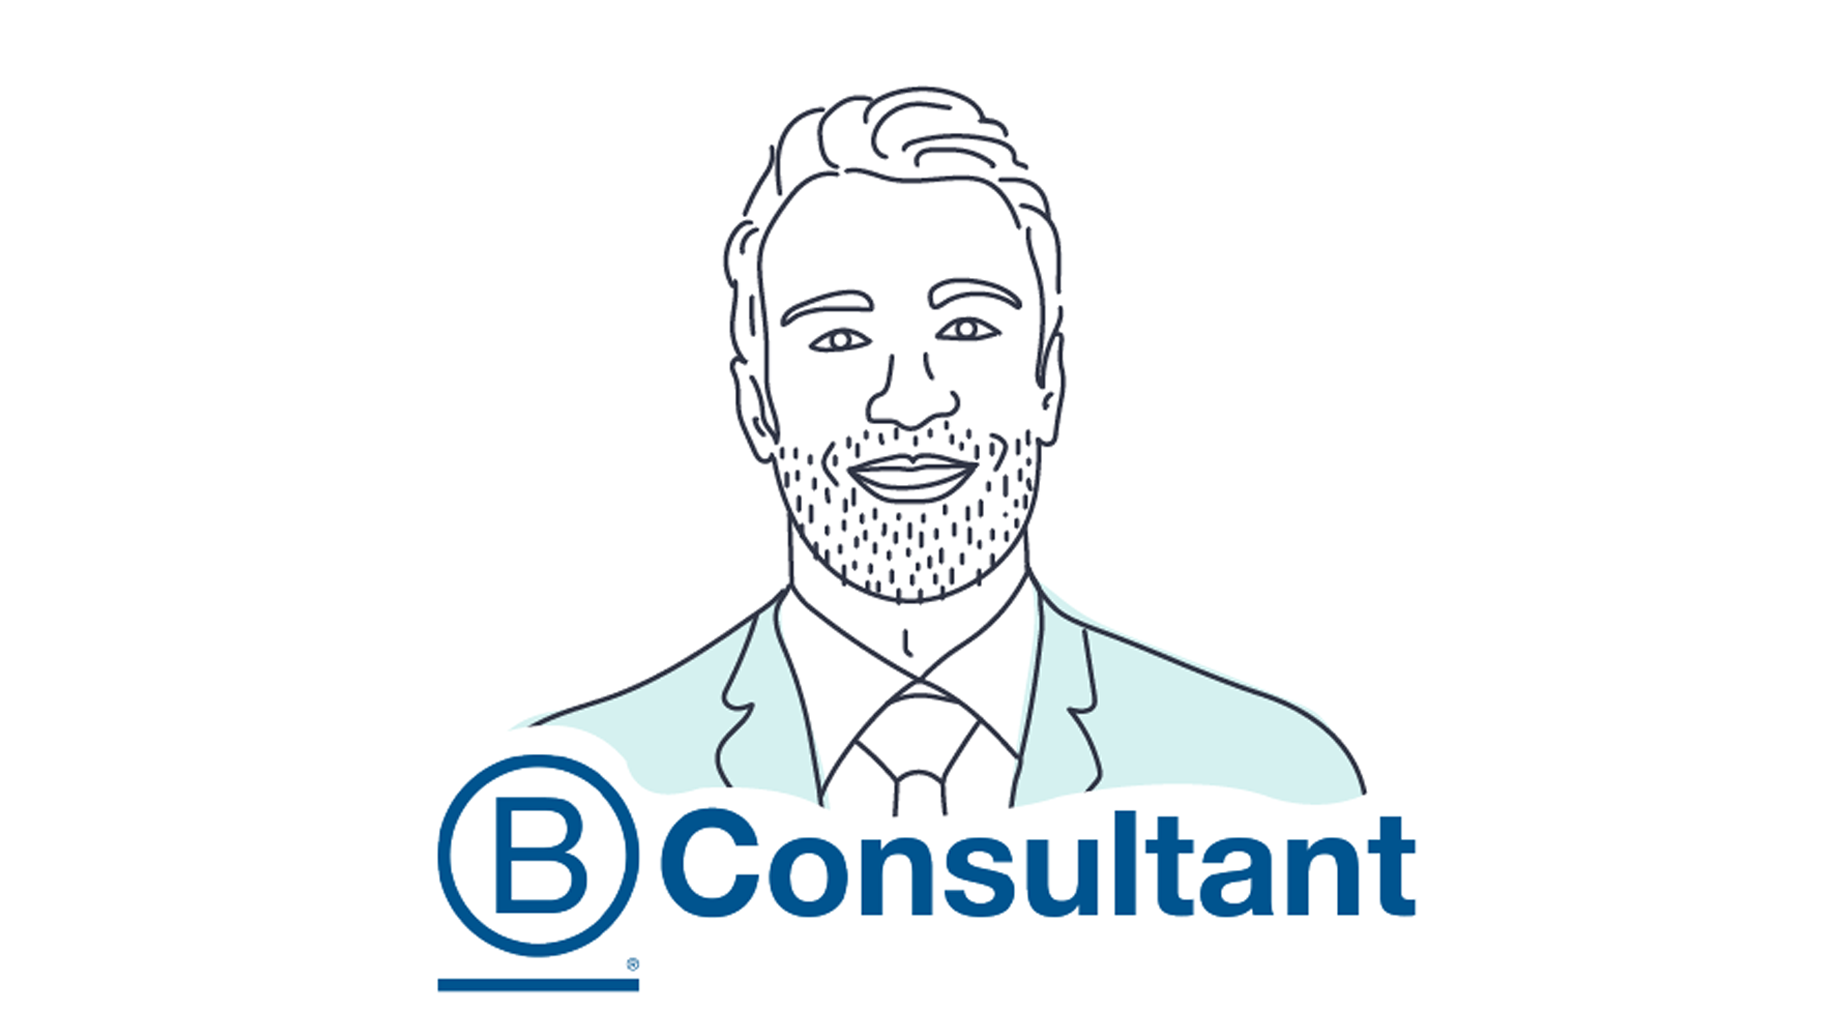 B Consultant